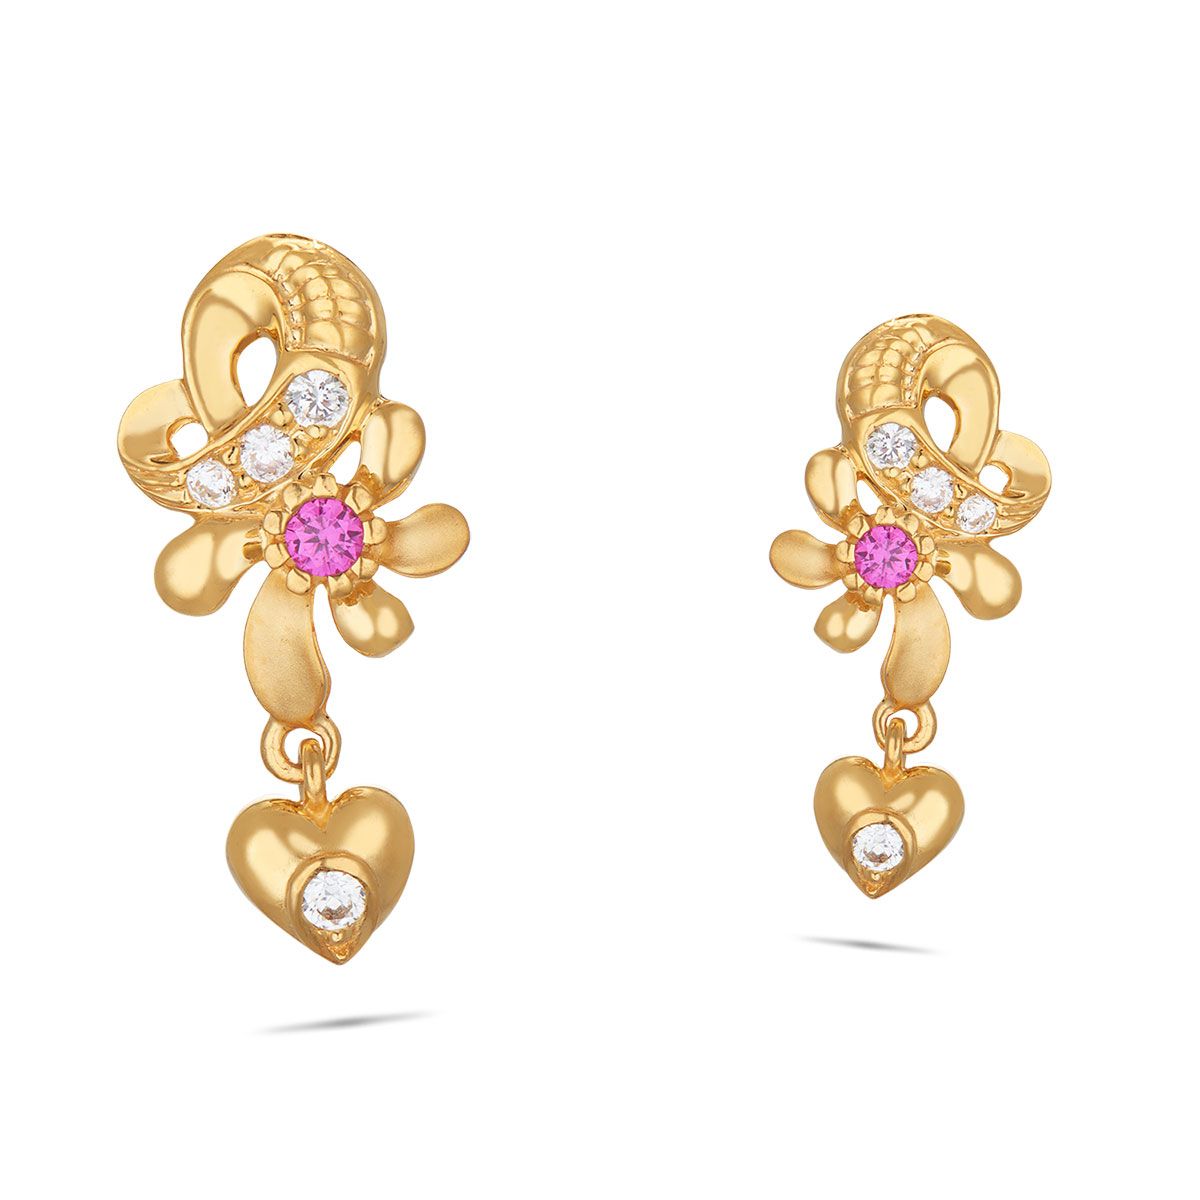 Share more than 139 2 gram gold earrings models super hot